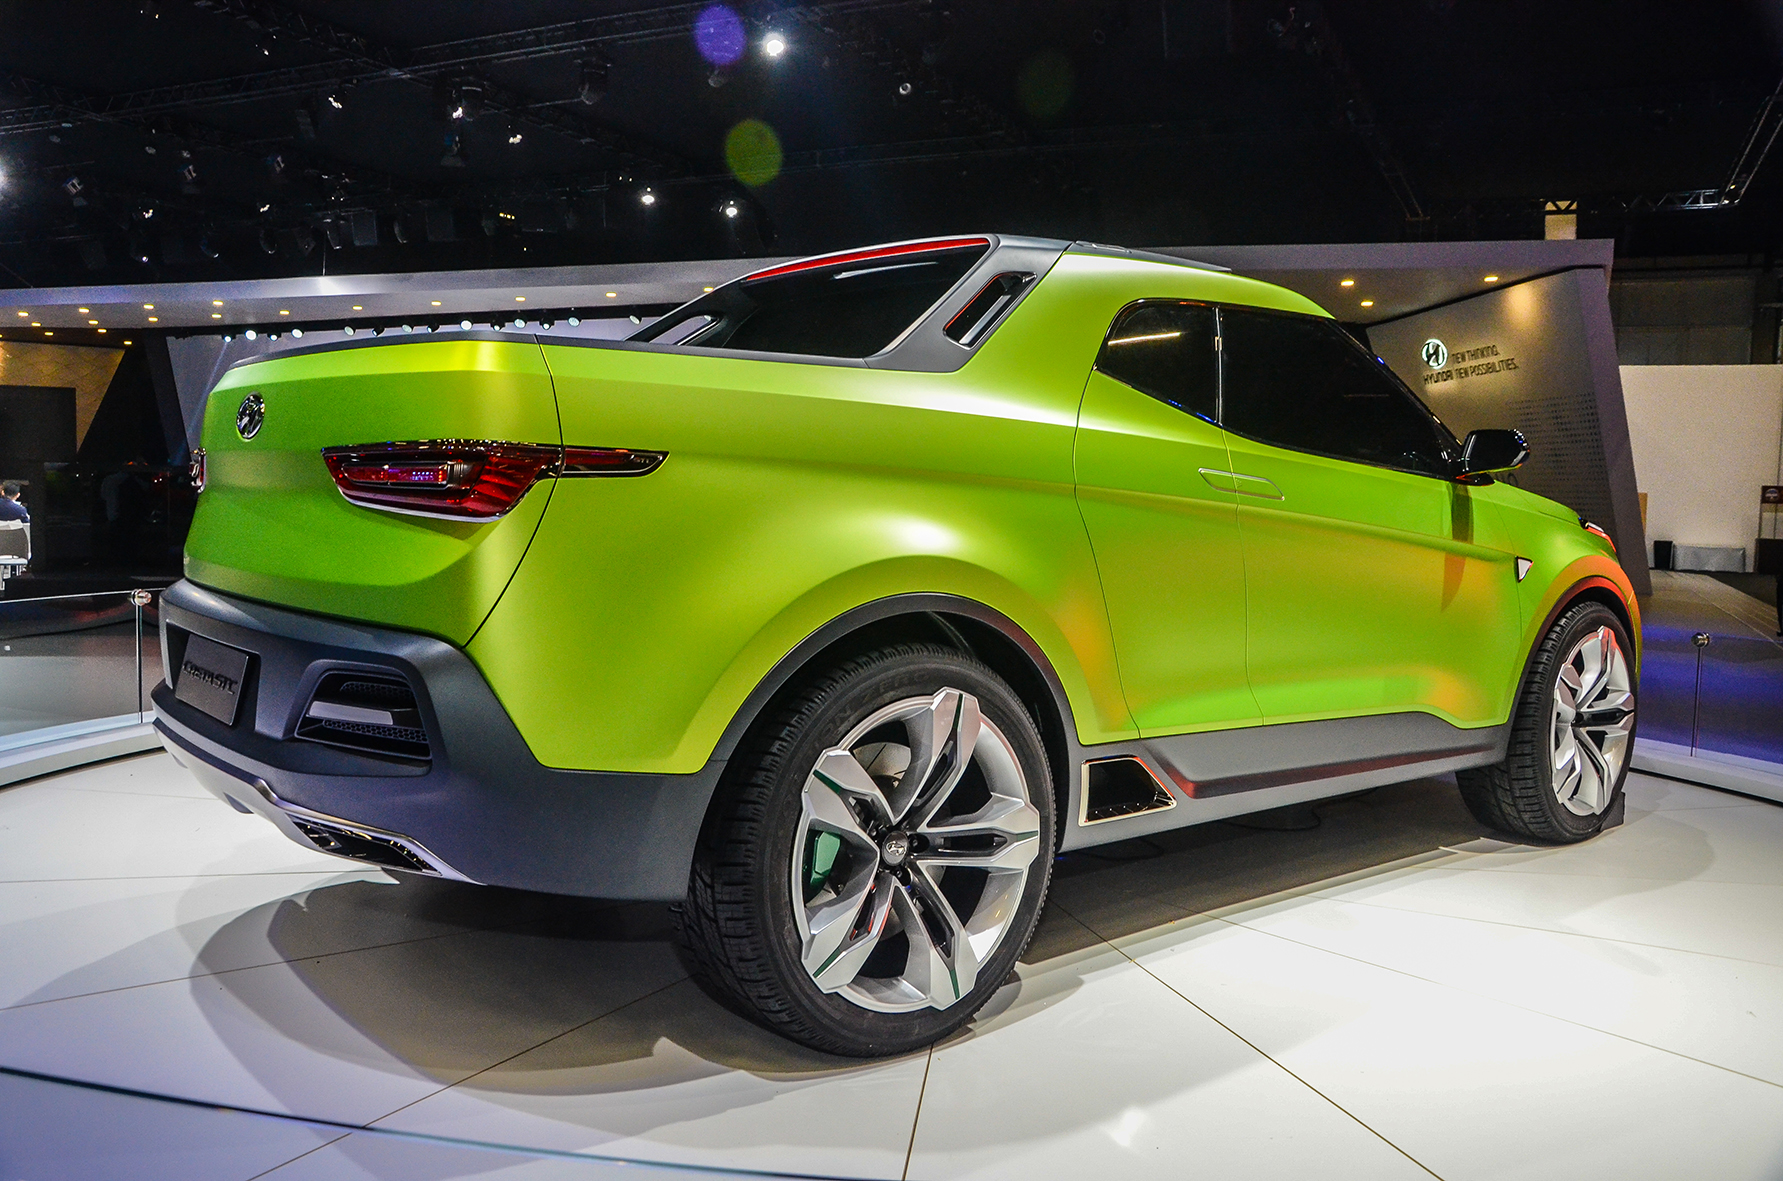 Hyundai Creta STC foi um conceito de picape na cor verde apresentado no Salão de São Paulo 2016